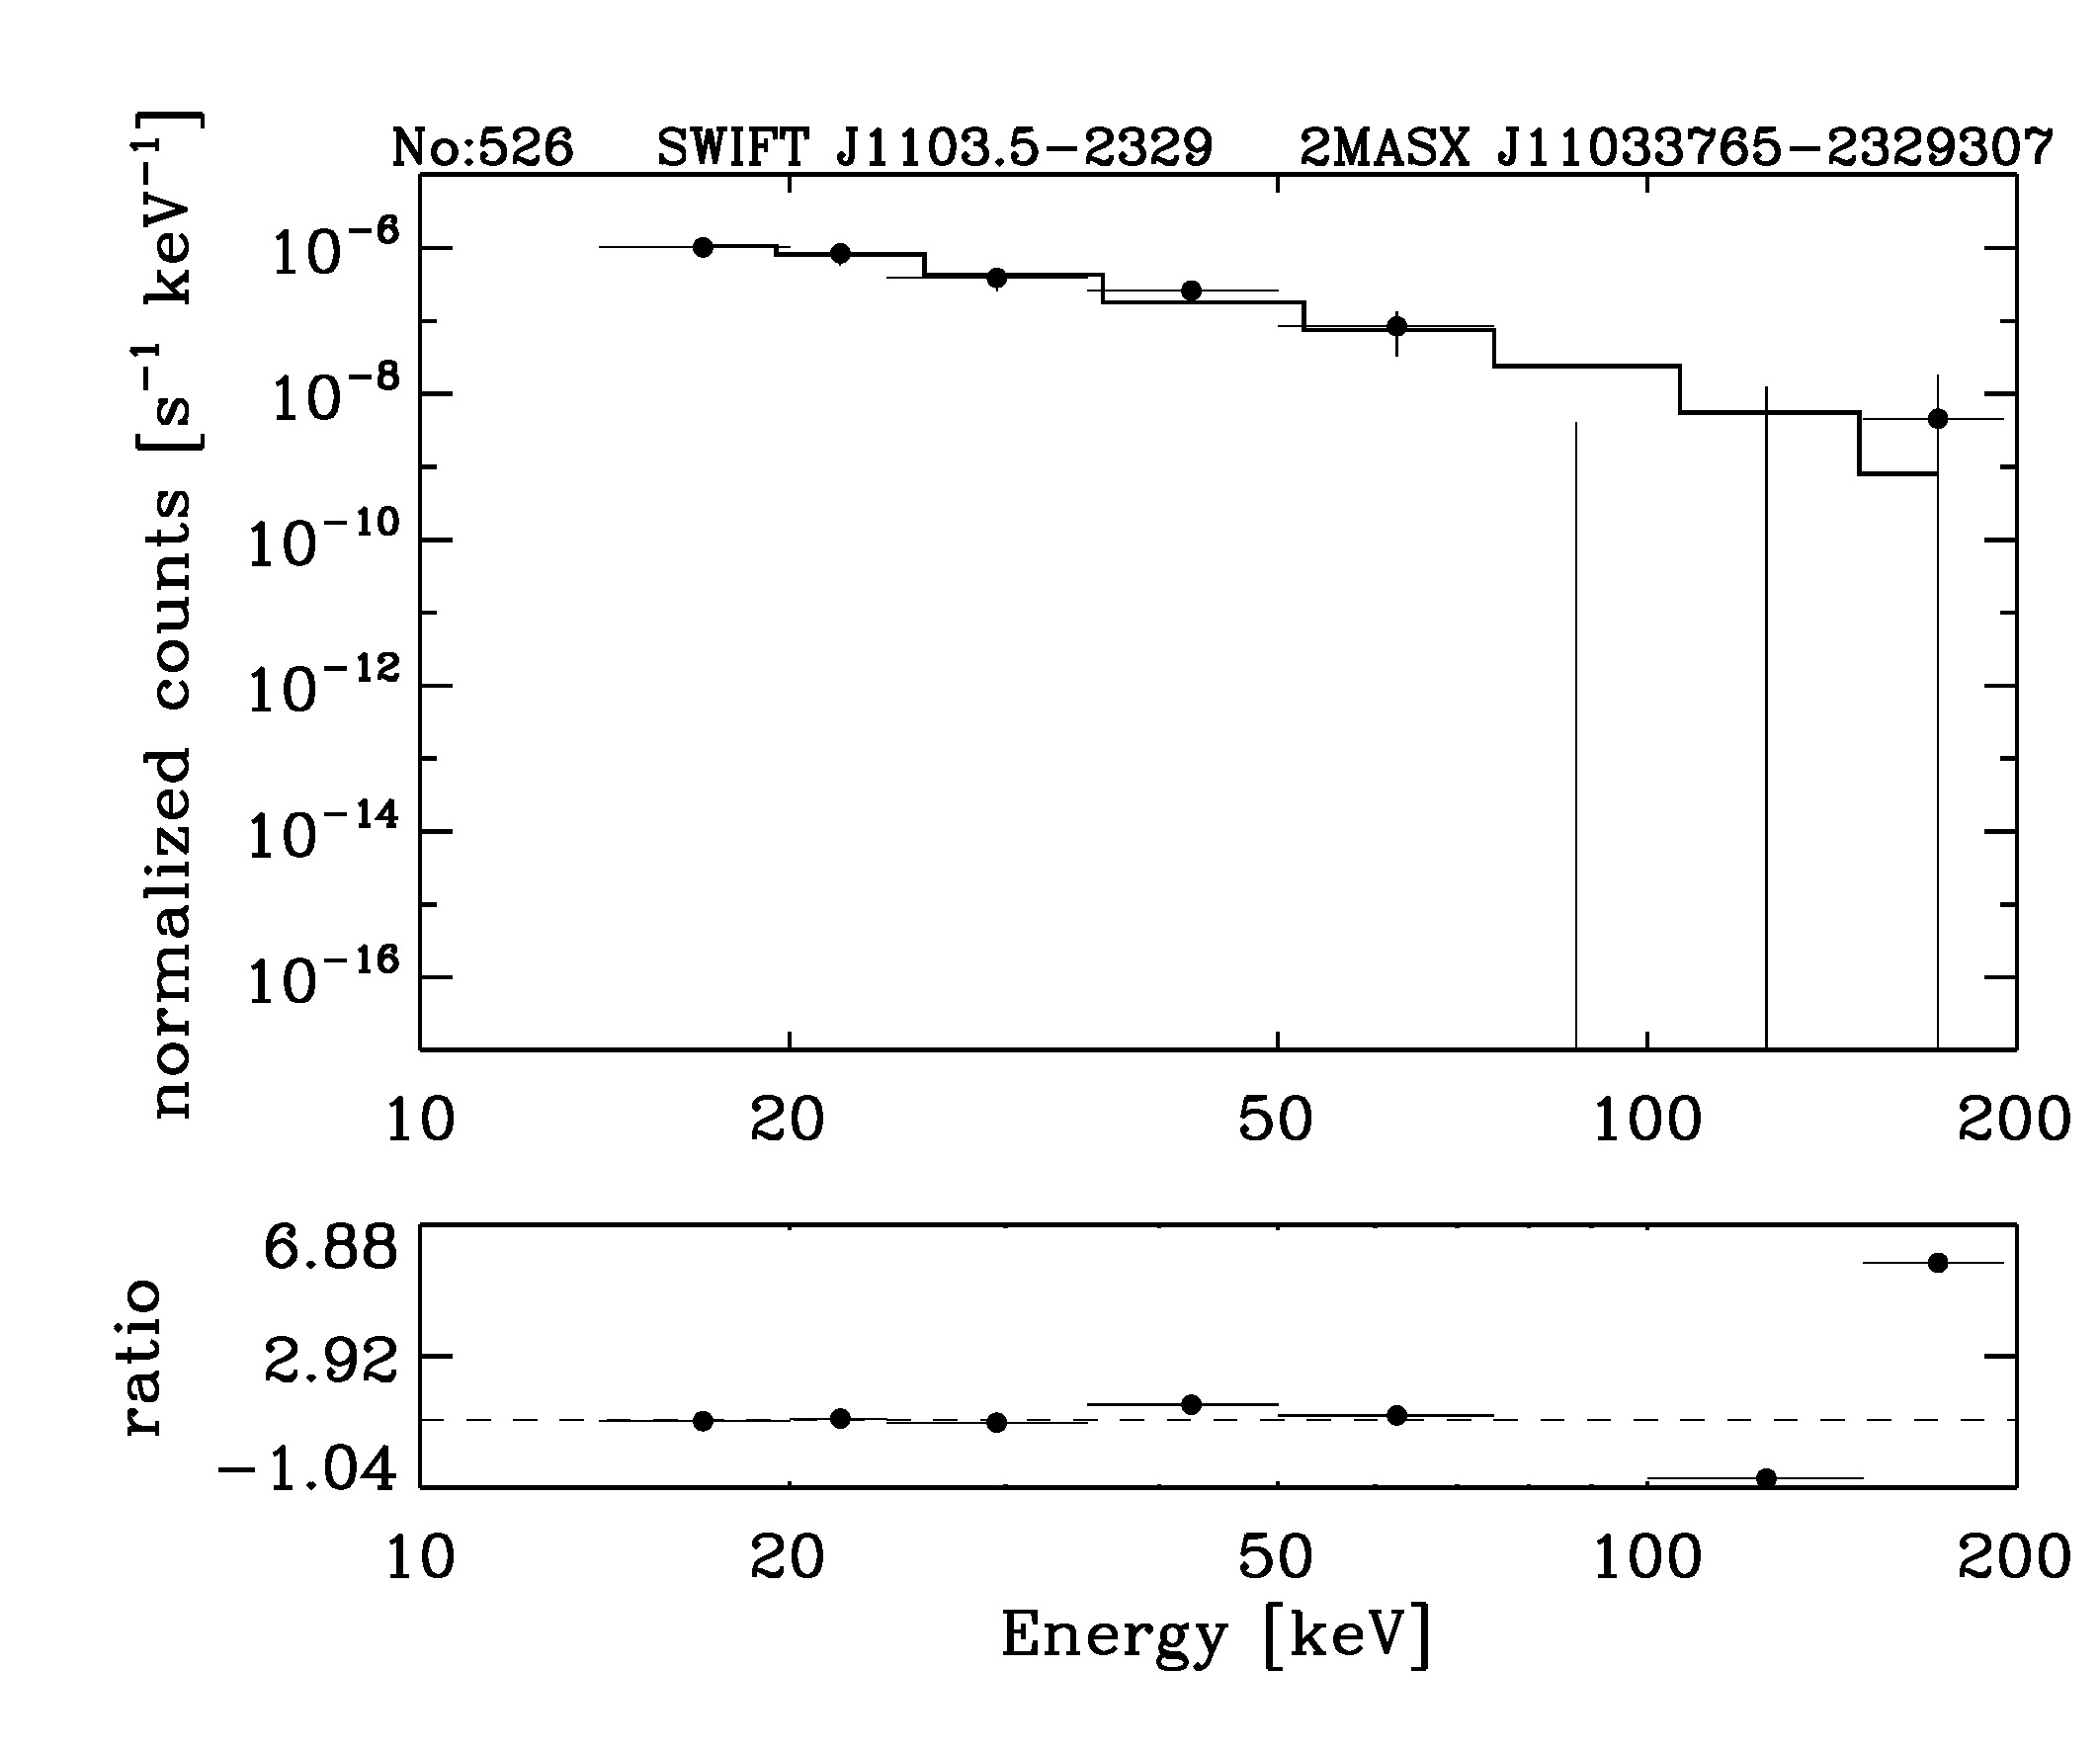 BAT Spectrum for SWIFT J1103.5-2329